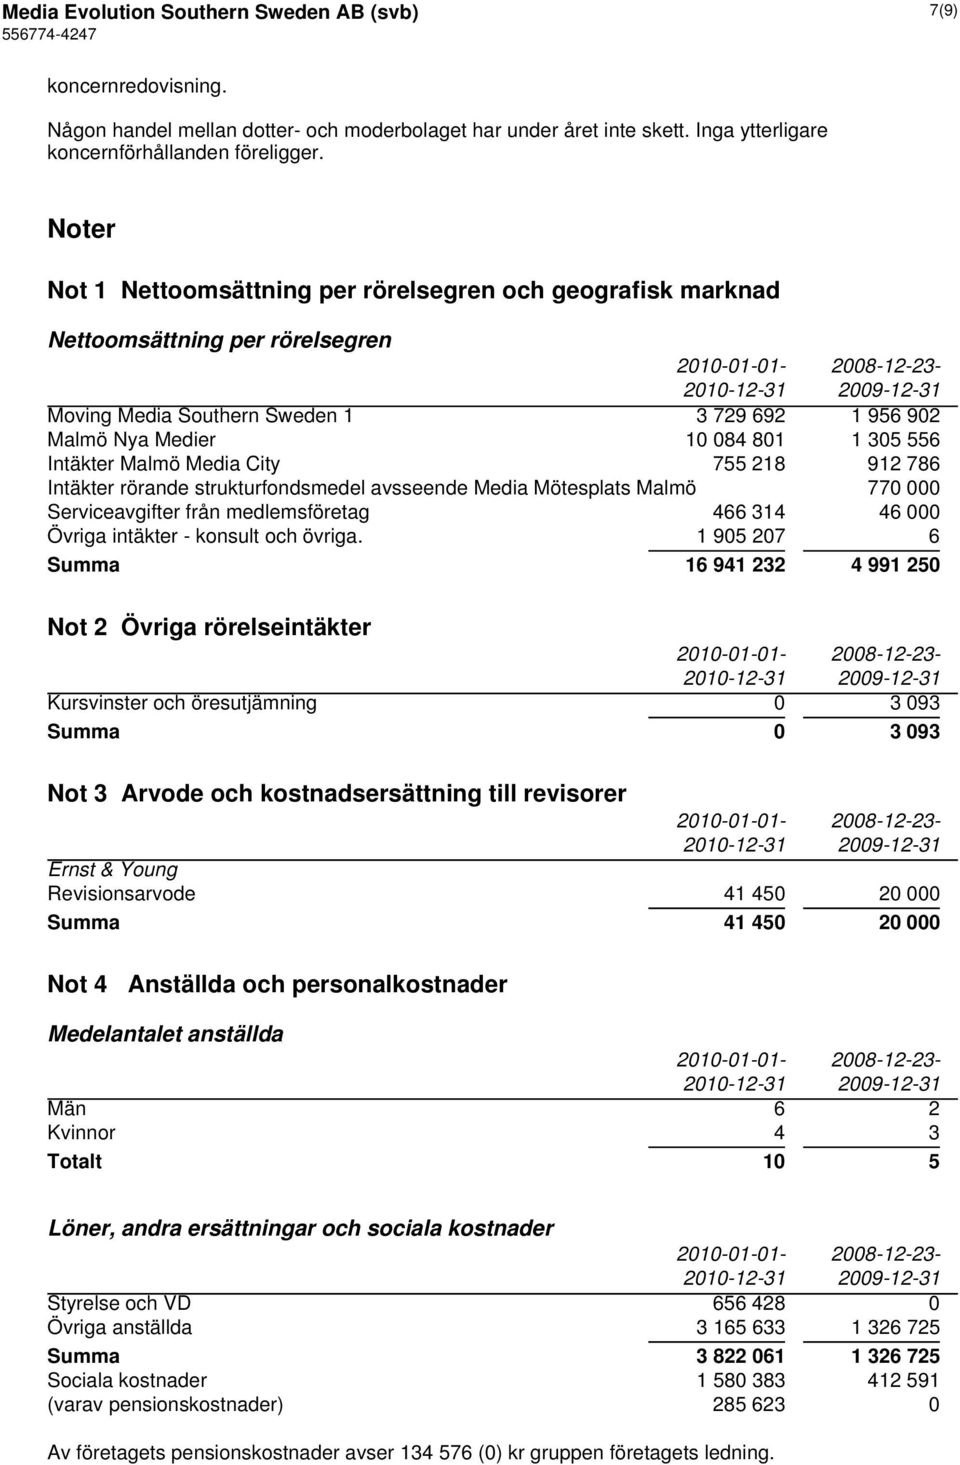 Malmö Media City 755 218 912 786 Intäkter rörande strukturfondsmedel avsseende Media Mötesplats Malmö 770 000 Serviceavgifter från medlemsföretag 466 314 46 000 Övriga intäkter - konsult och övriga.